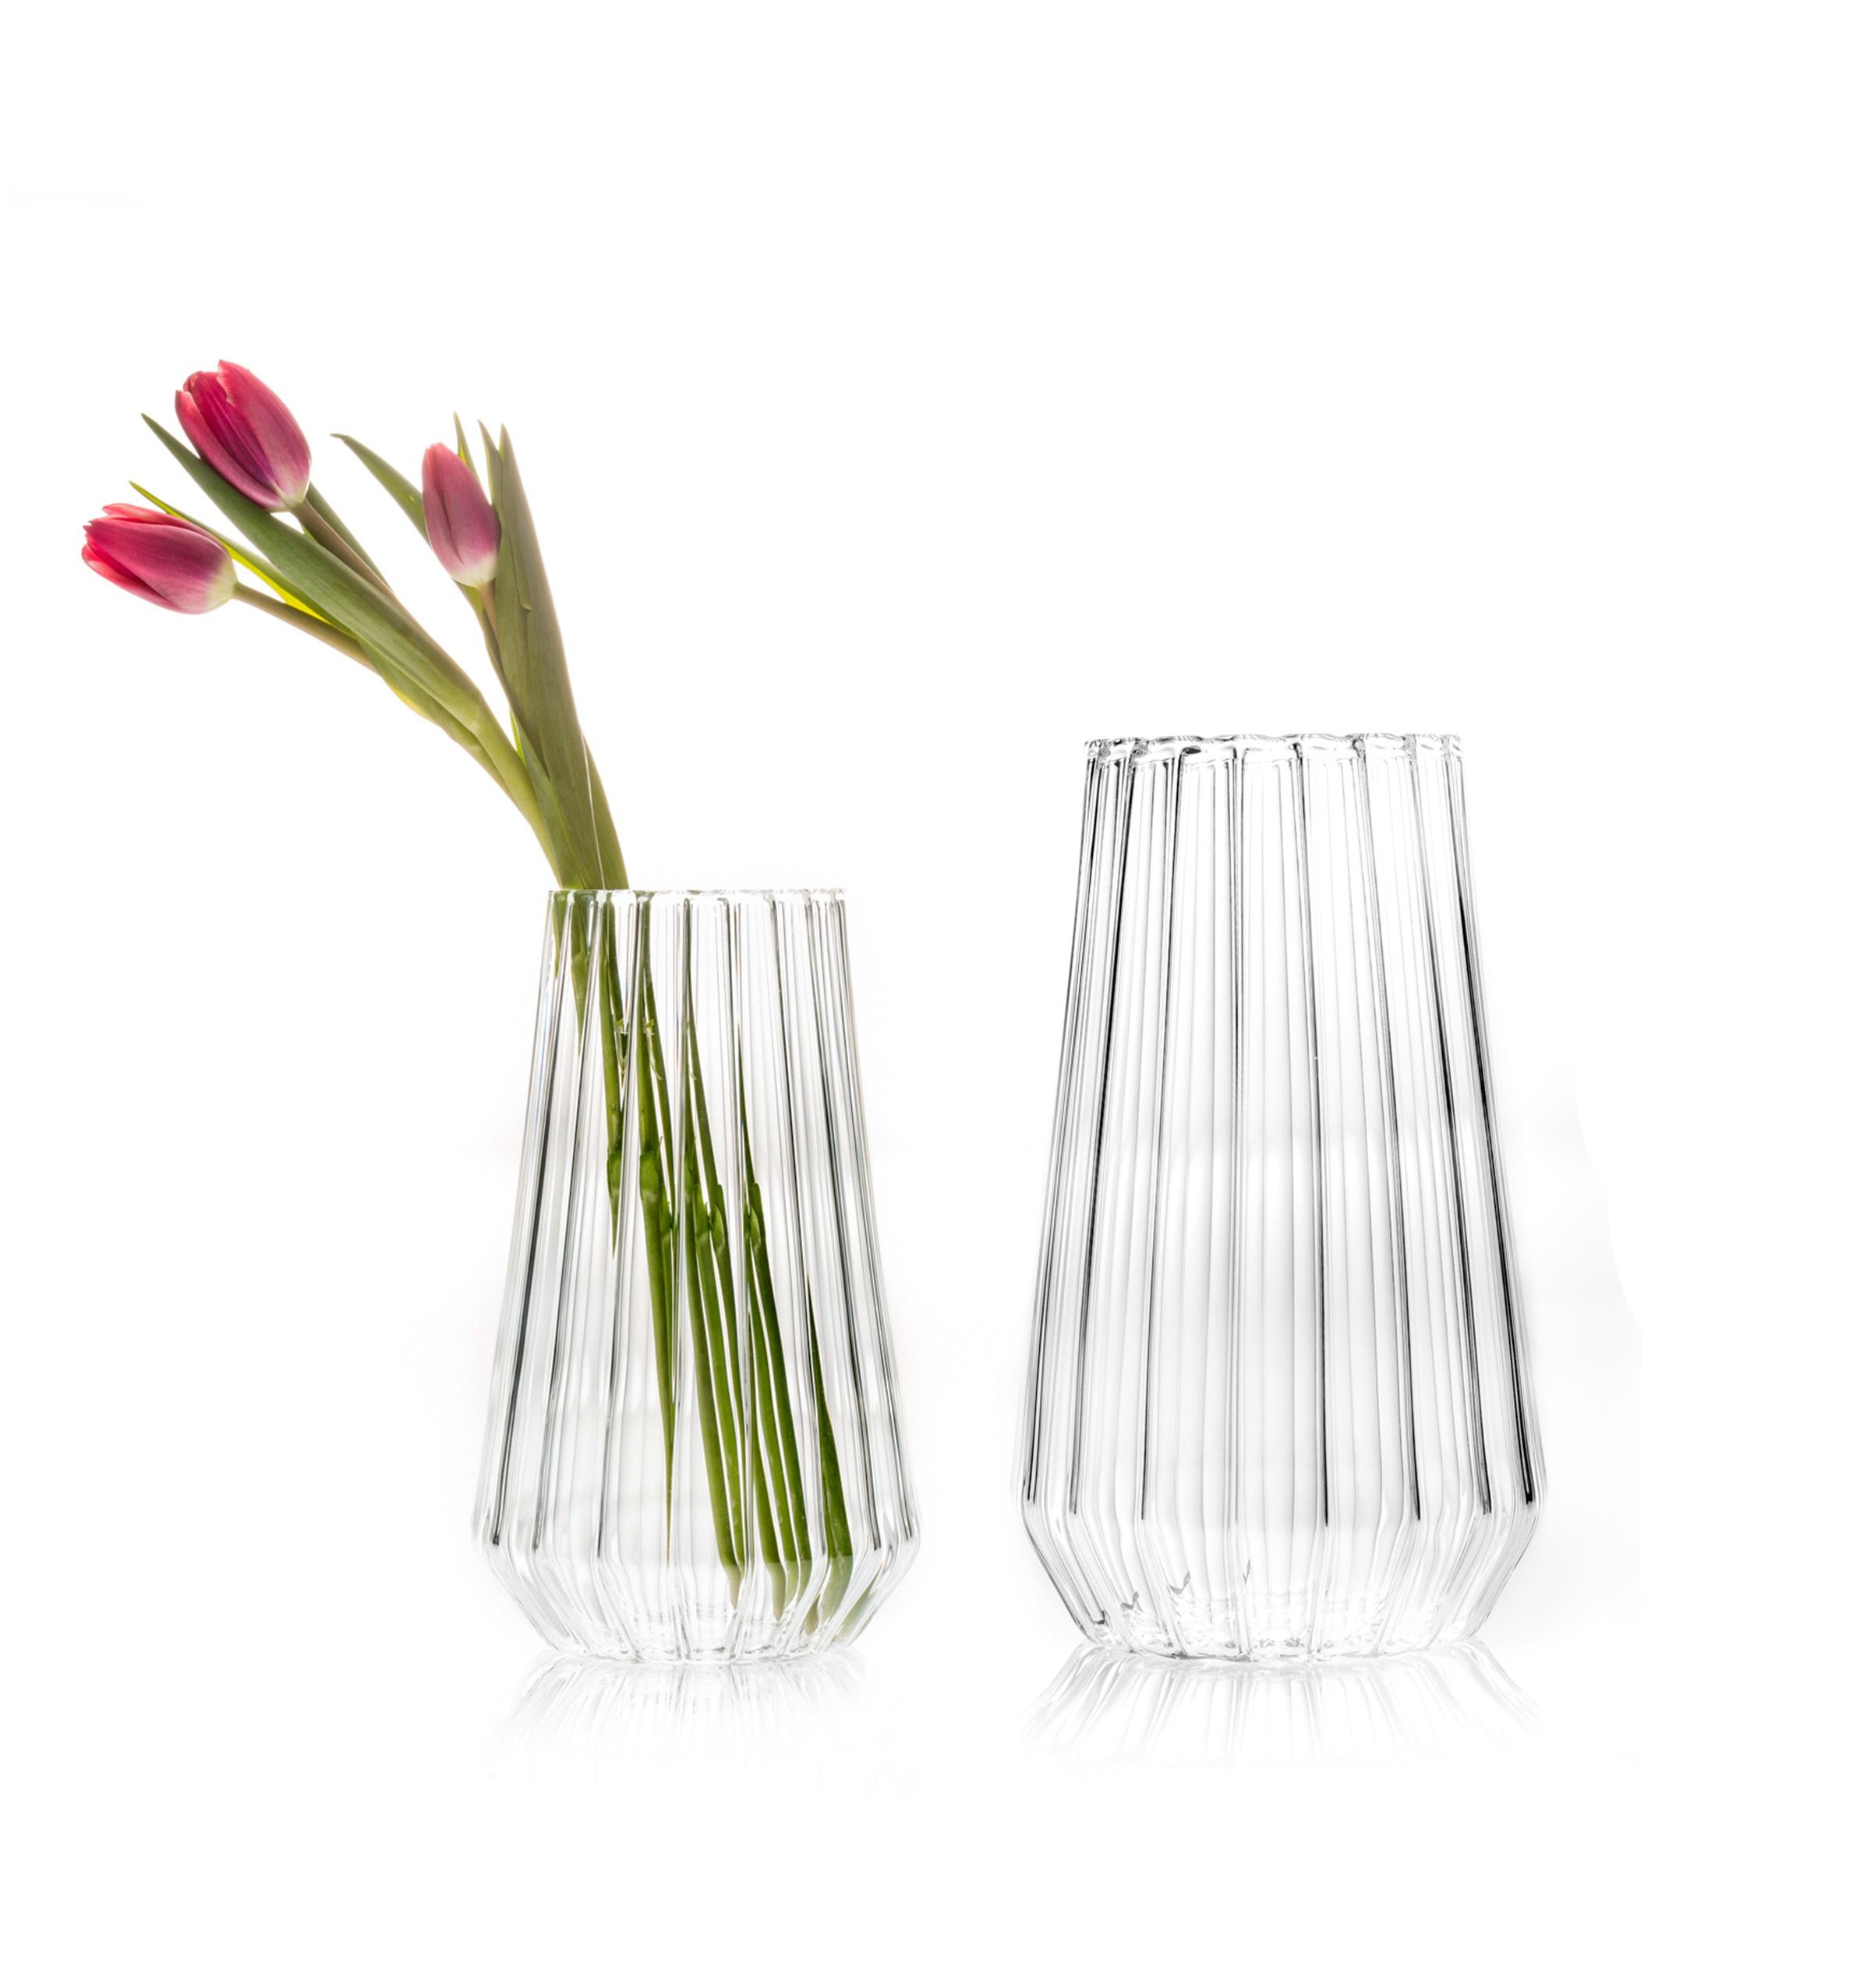 Stella Vasen Large & Medium - 2er-Set

Die reine Form, der linsenförmige Effekt des geriffelten Glases verdeckt die Stiele und bringt die Blütenköpfe zur Geltung. Die Facette in der Nähe des Bodens dient als Markierung für die Wasserlinie und